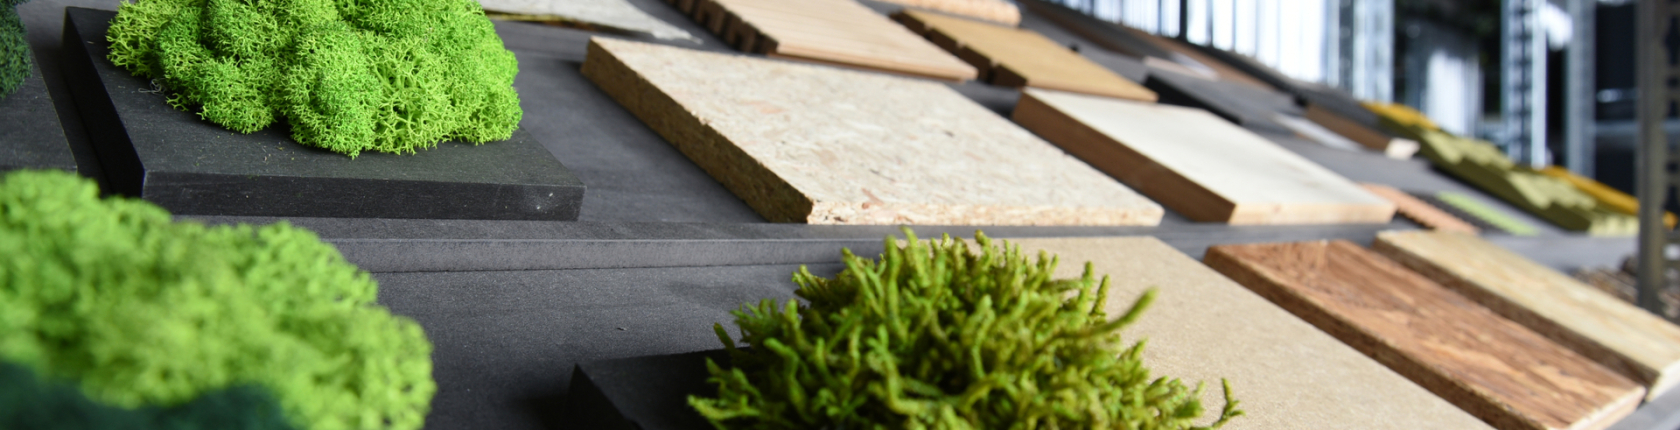 Verschiedene nachhaltige Materialien, darunter grüne Moosflächen und unterschiedliche Holz- und Steinplatten, die in einem Regal ausgestellt sind.